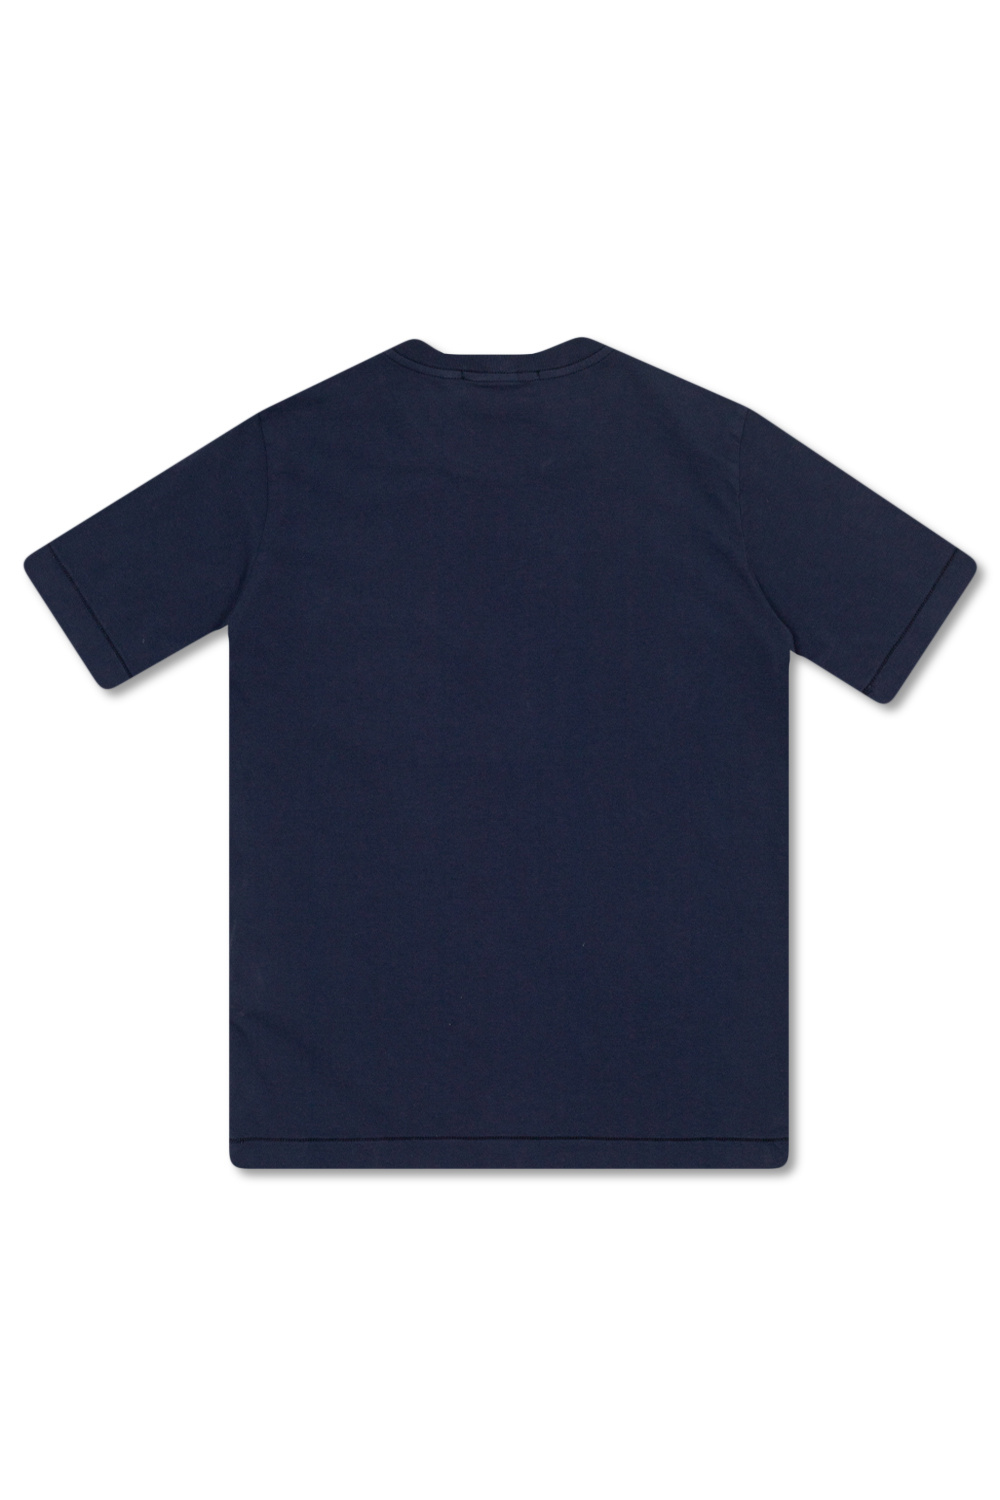 SHIRT Zip Pocket Tee T-shirt with logo